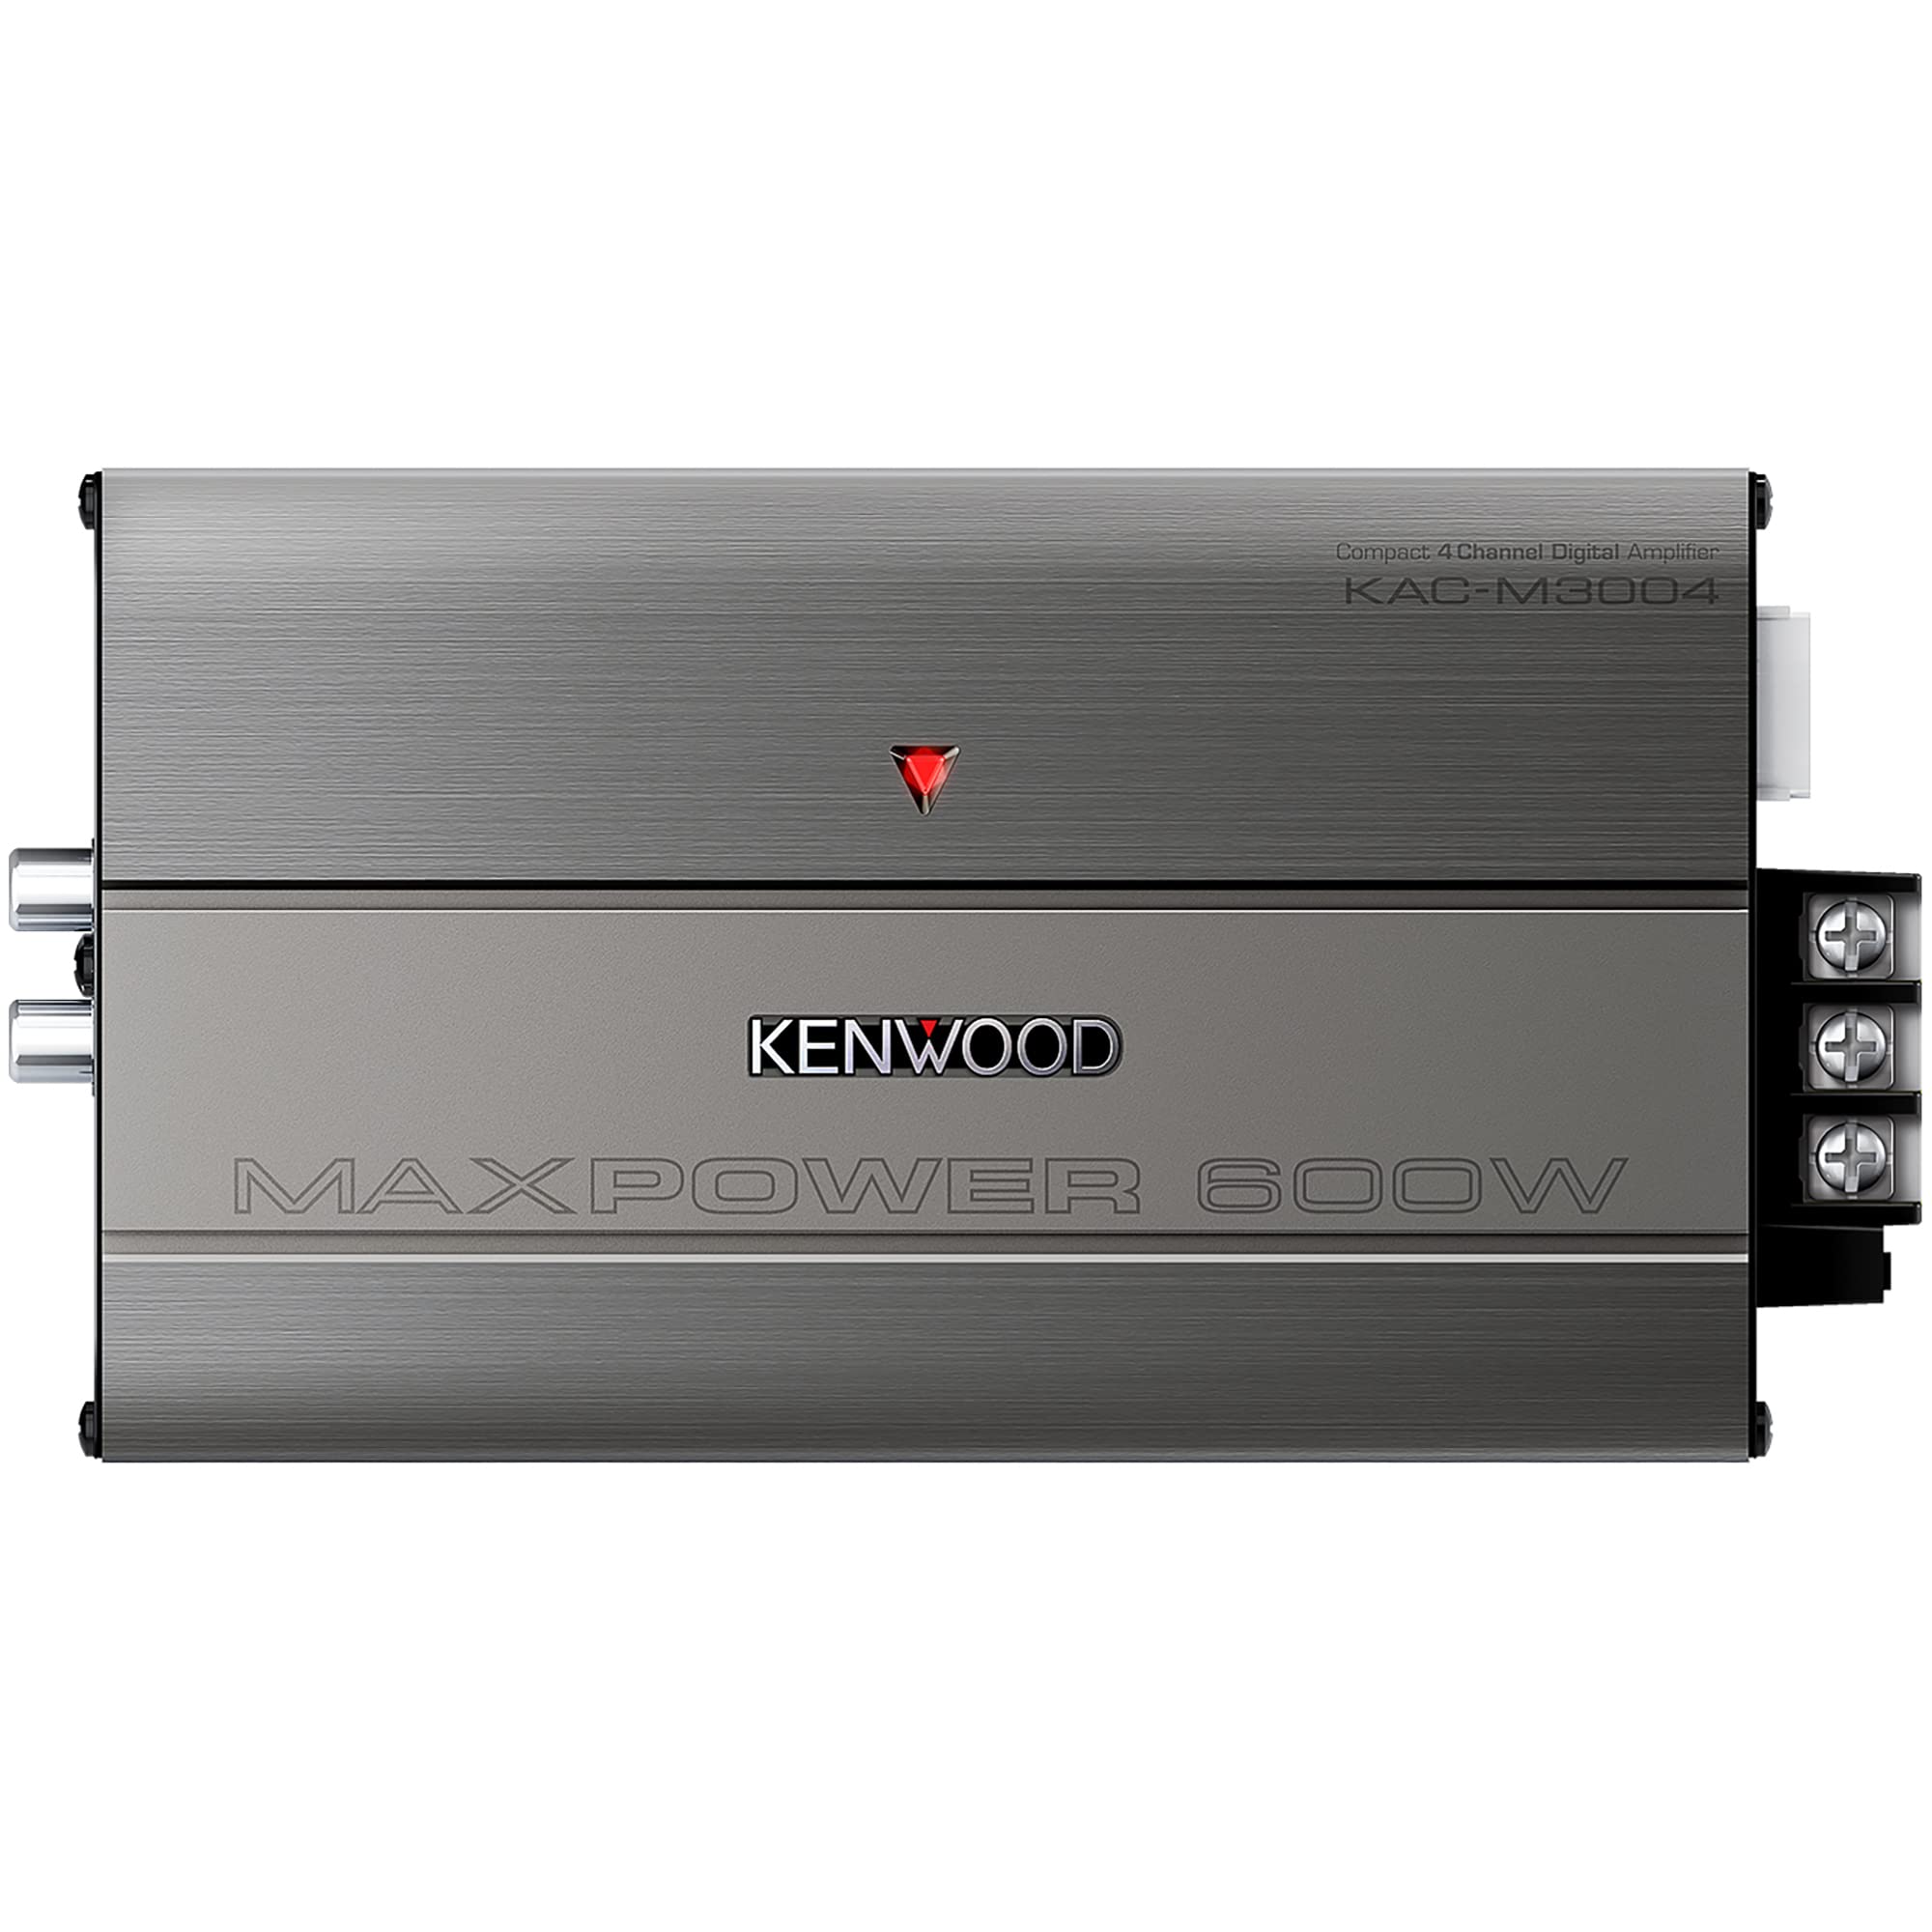 KENWOOD KAC-M3004 コンパクト 600W 4 チャンネル カー/マリン/パワースポーツ デジタル アンプ